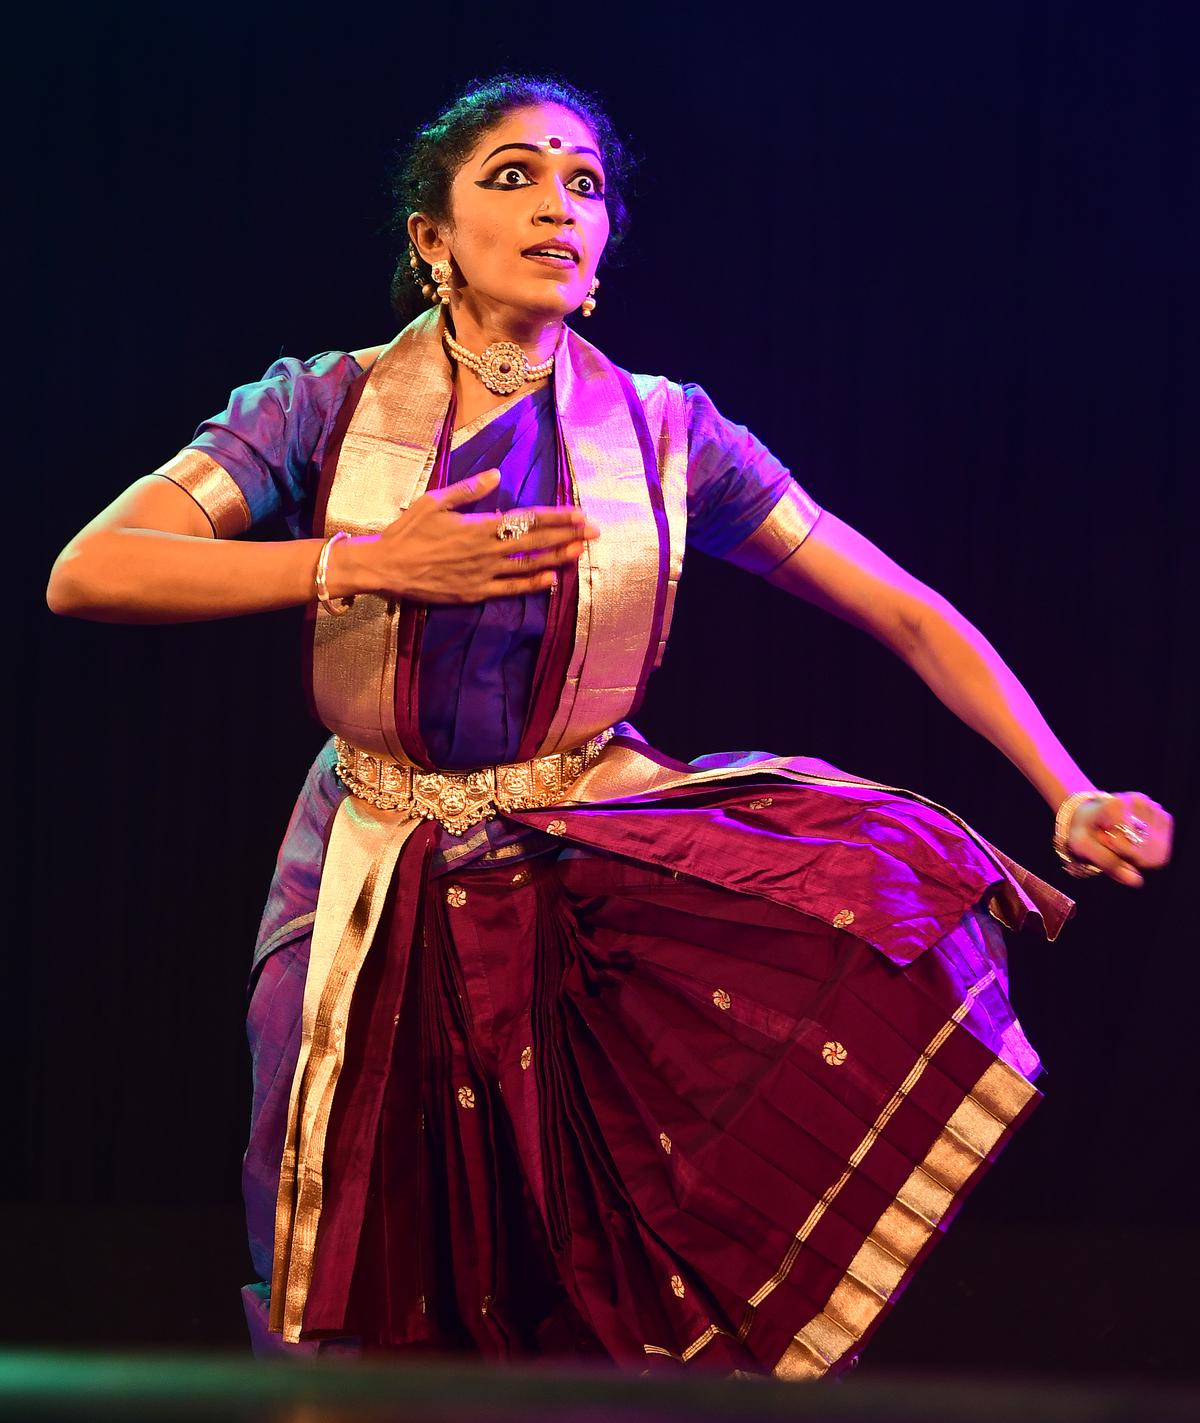 Dance performance by Karuna Sagari - Skanda Shasti for Natyarangam 2022, at Narada Gana Sabha.